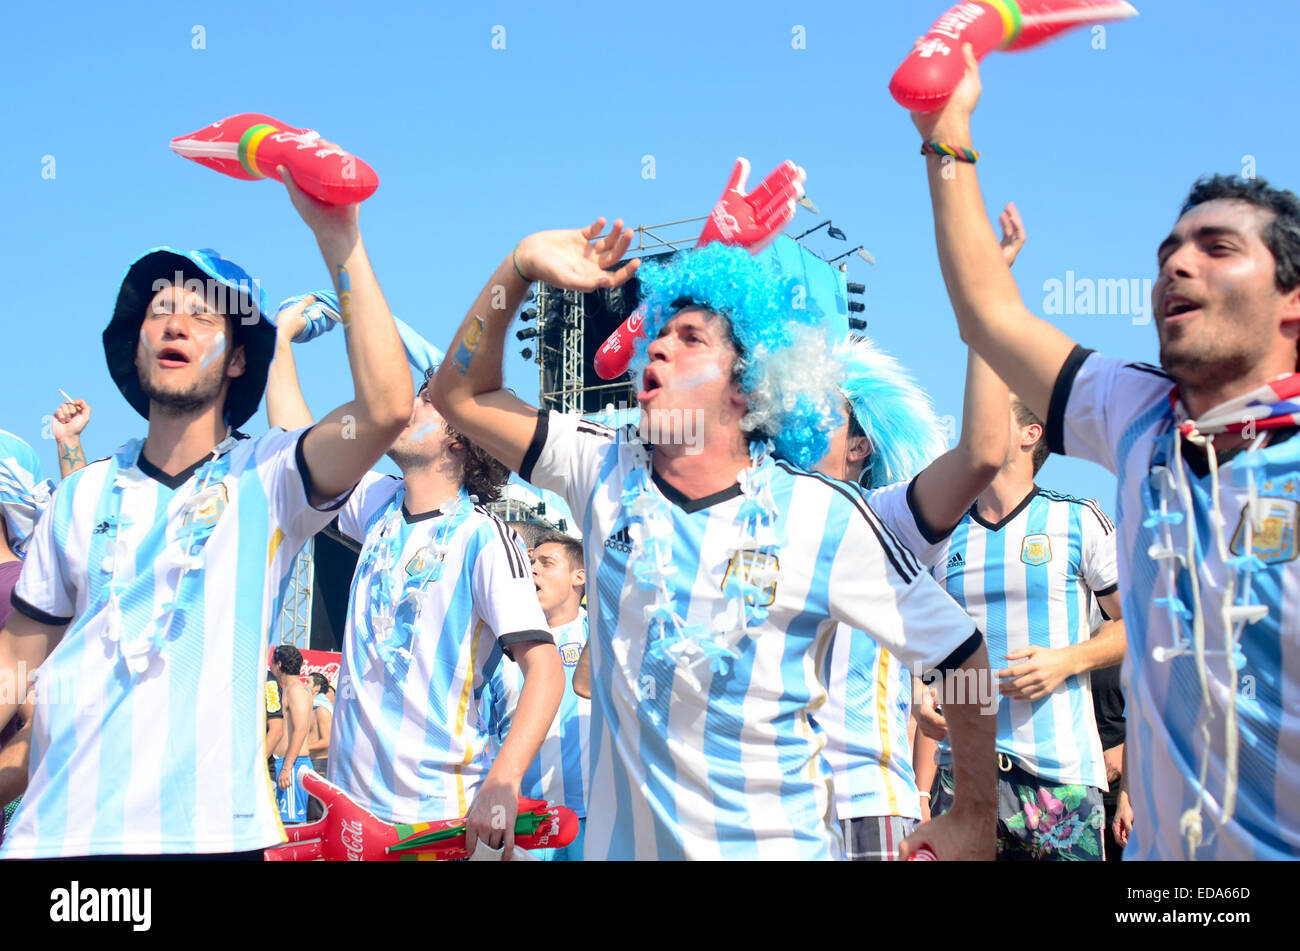 2014 FIFA World Cup - Runde 16 - Argentinien vs. Schweiz Spiel ausgetragen bei Arena Corinthians - Fans wo Argentinien: Sao Paulo, Brasilien bei: 1. Juli 2014 Stockfoto